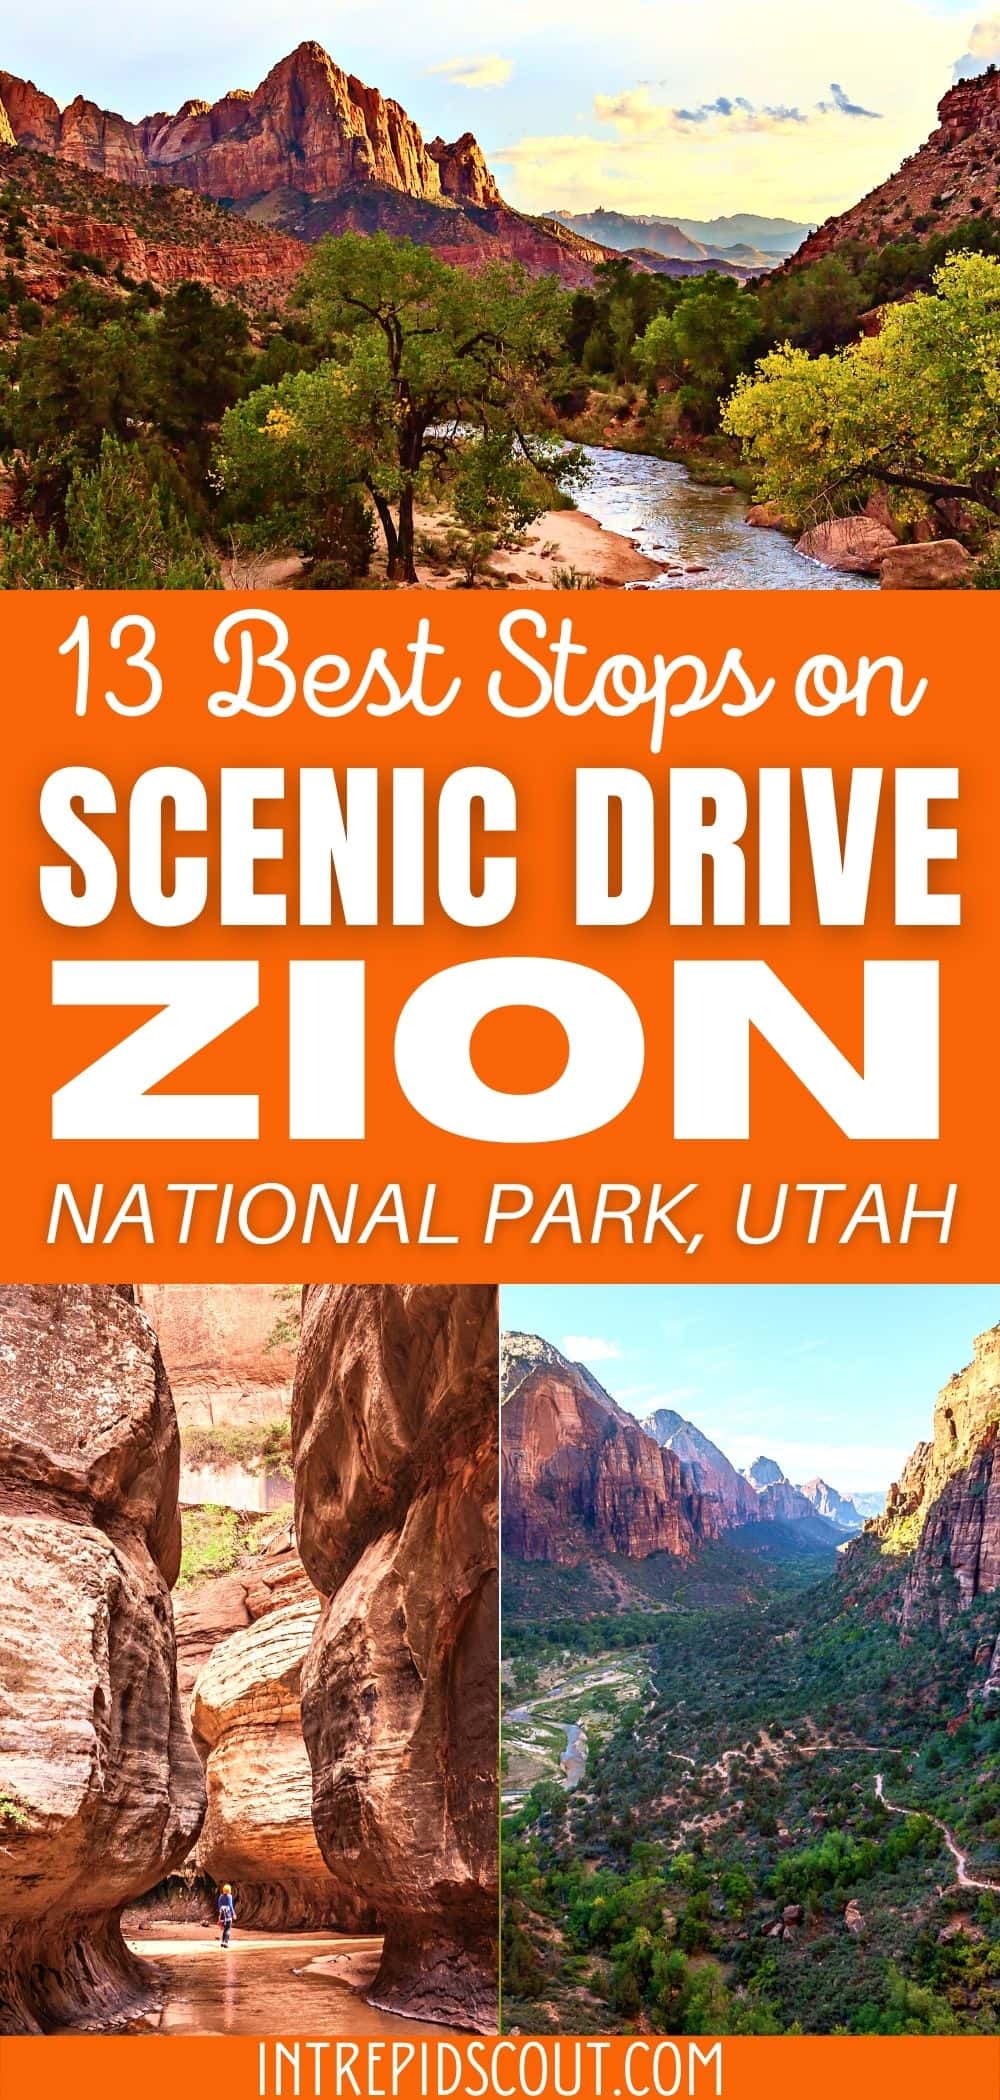 Scenic Drive in Zion